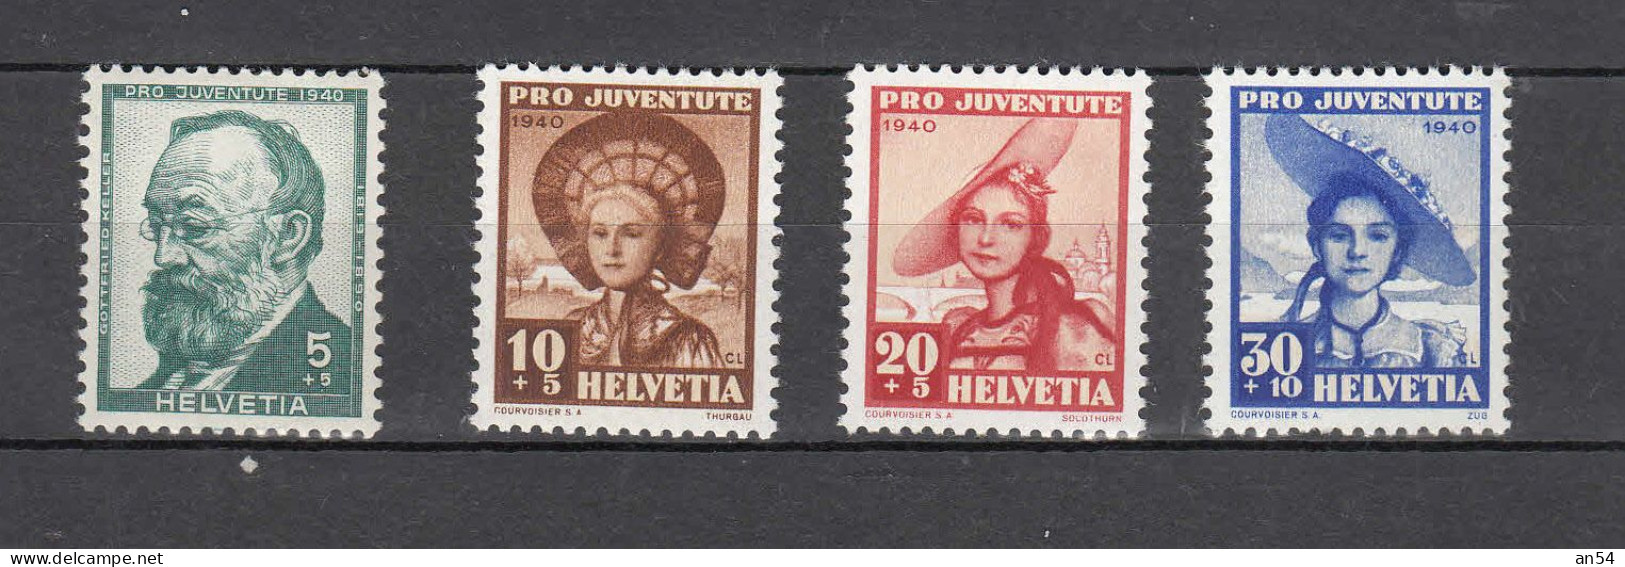 PJ   1940    N° J93 à J96  NEUFS**       COTE 10.00     CATALOGUE SBK - Unused Stamps